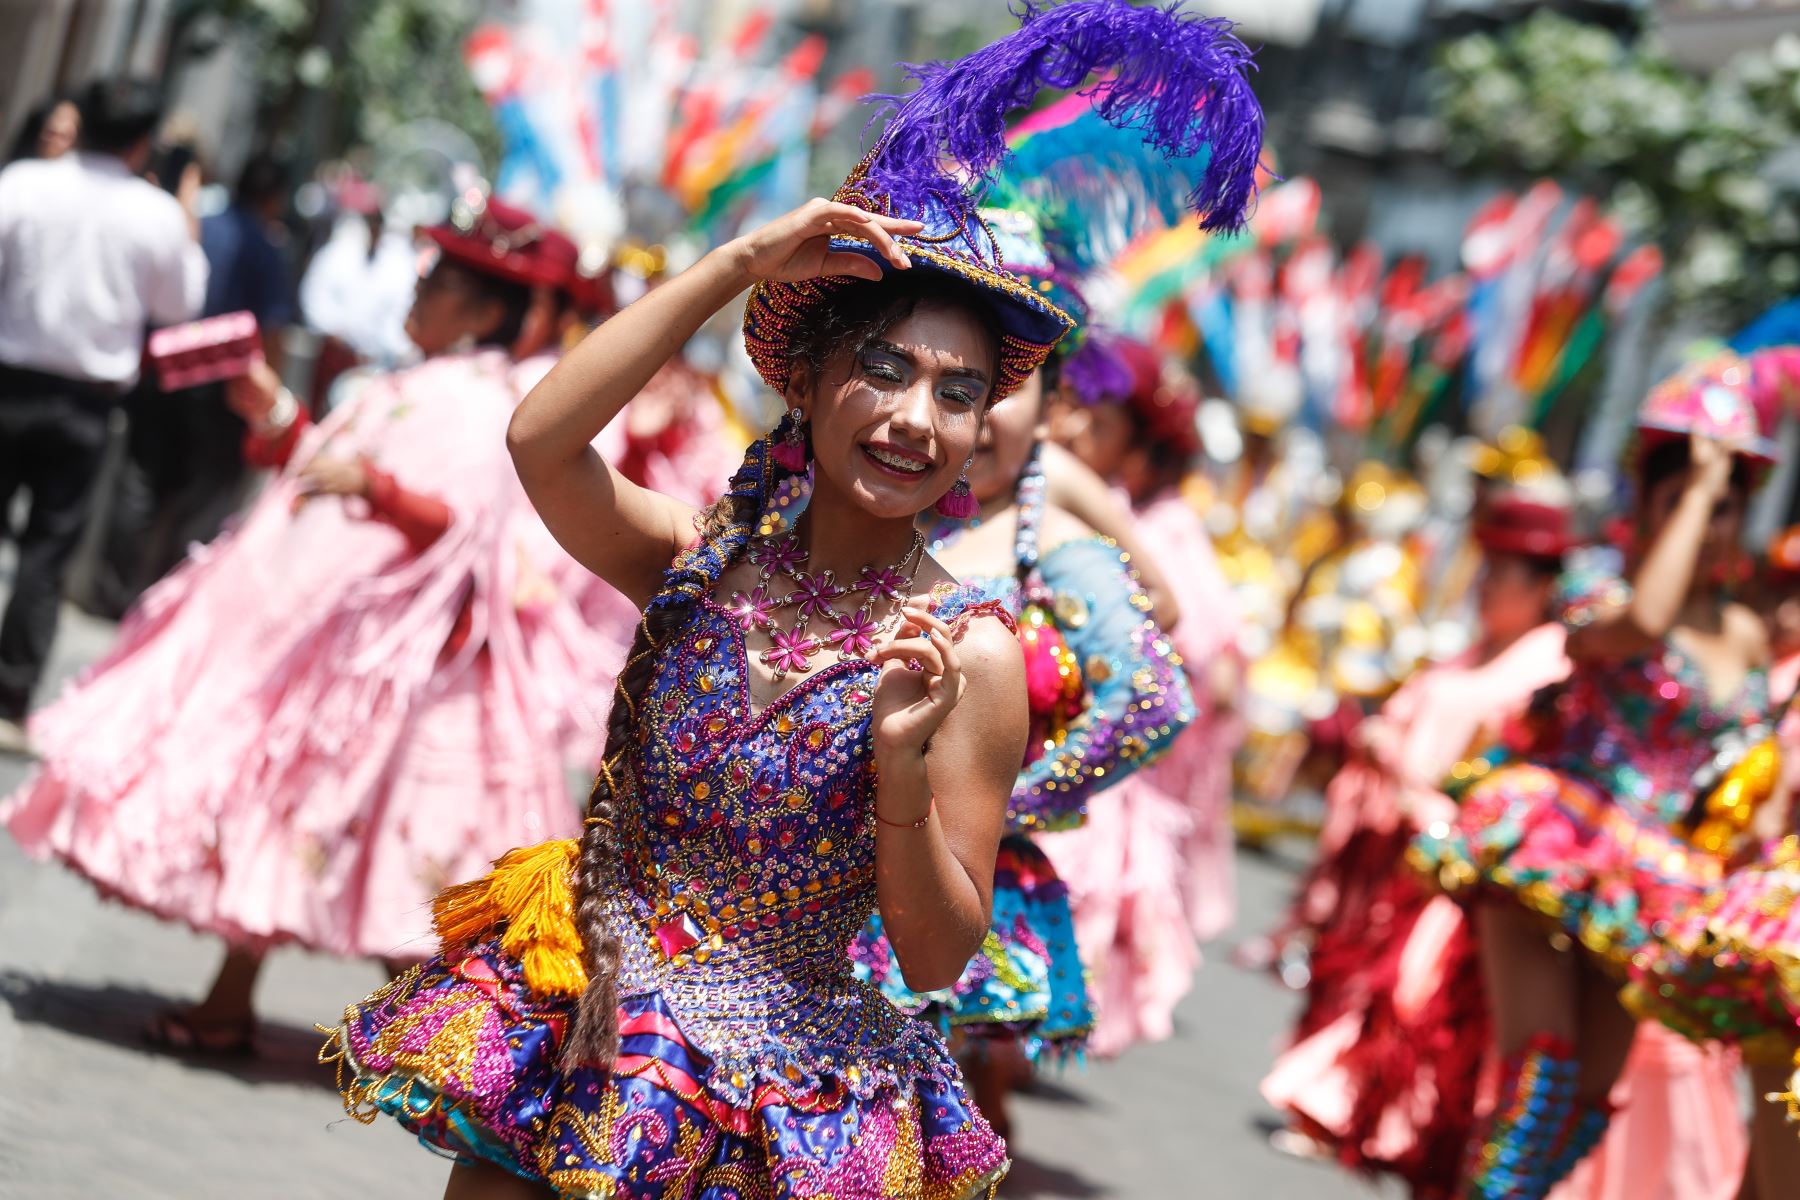 La región Puno fue reconocida ,en 1985, como la Capital del Folclor peruano porque posee más de 350 danzas originales, llenas de colorido y alegría desbordantes. ANDINA/Renato Pajuelo